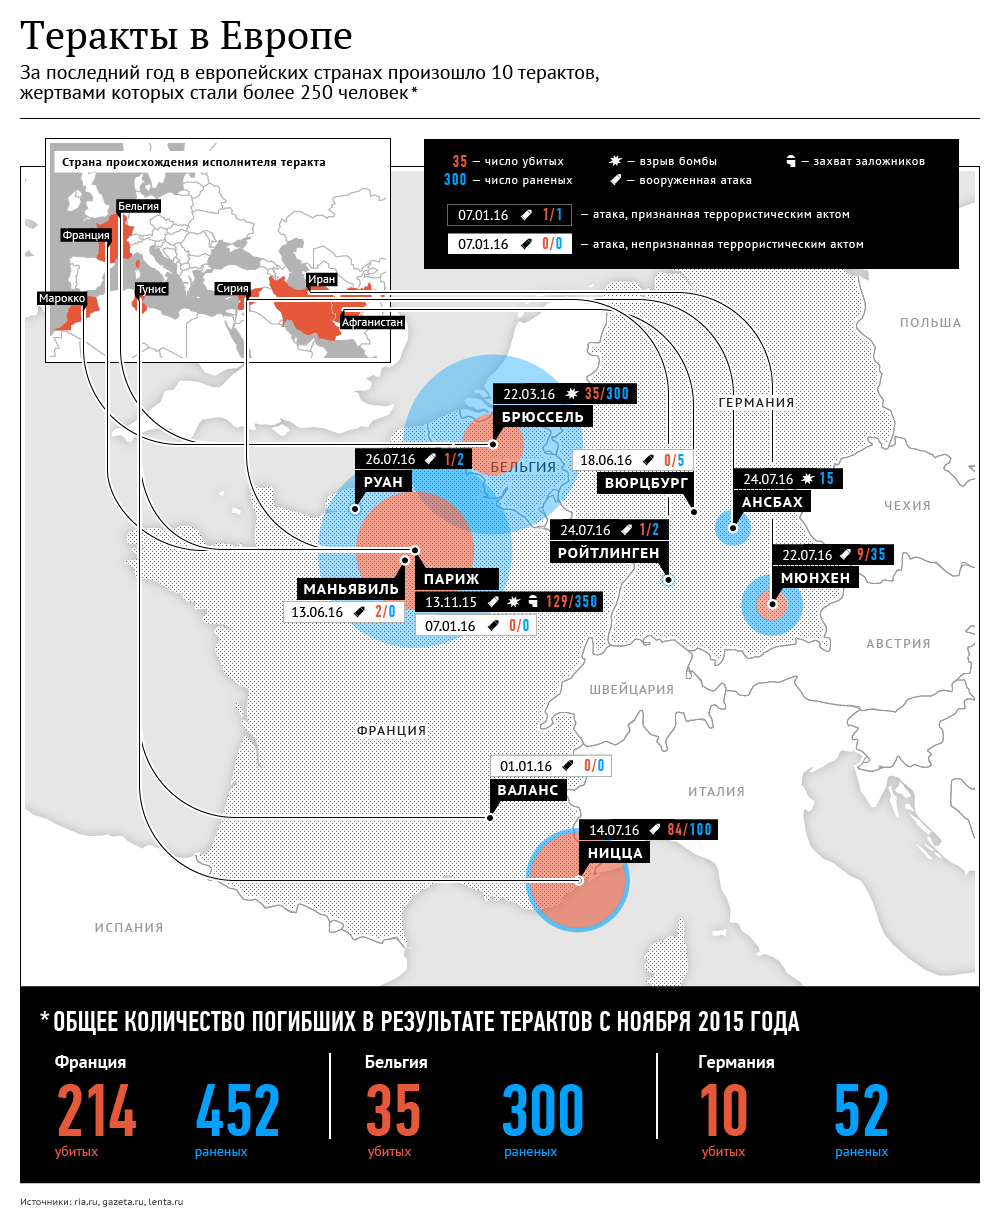 Террористические акты в Европе. Инфографика